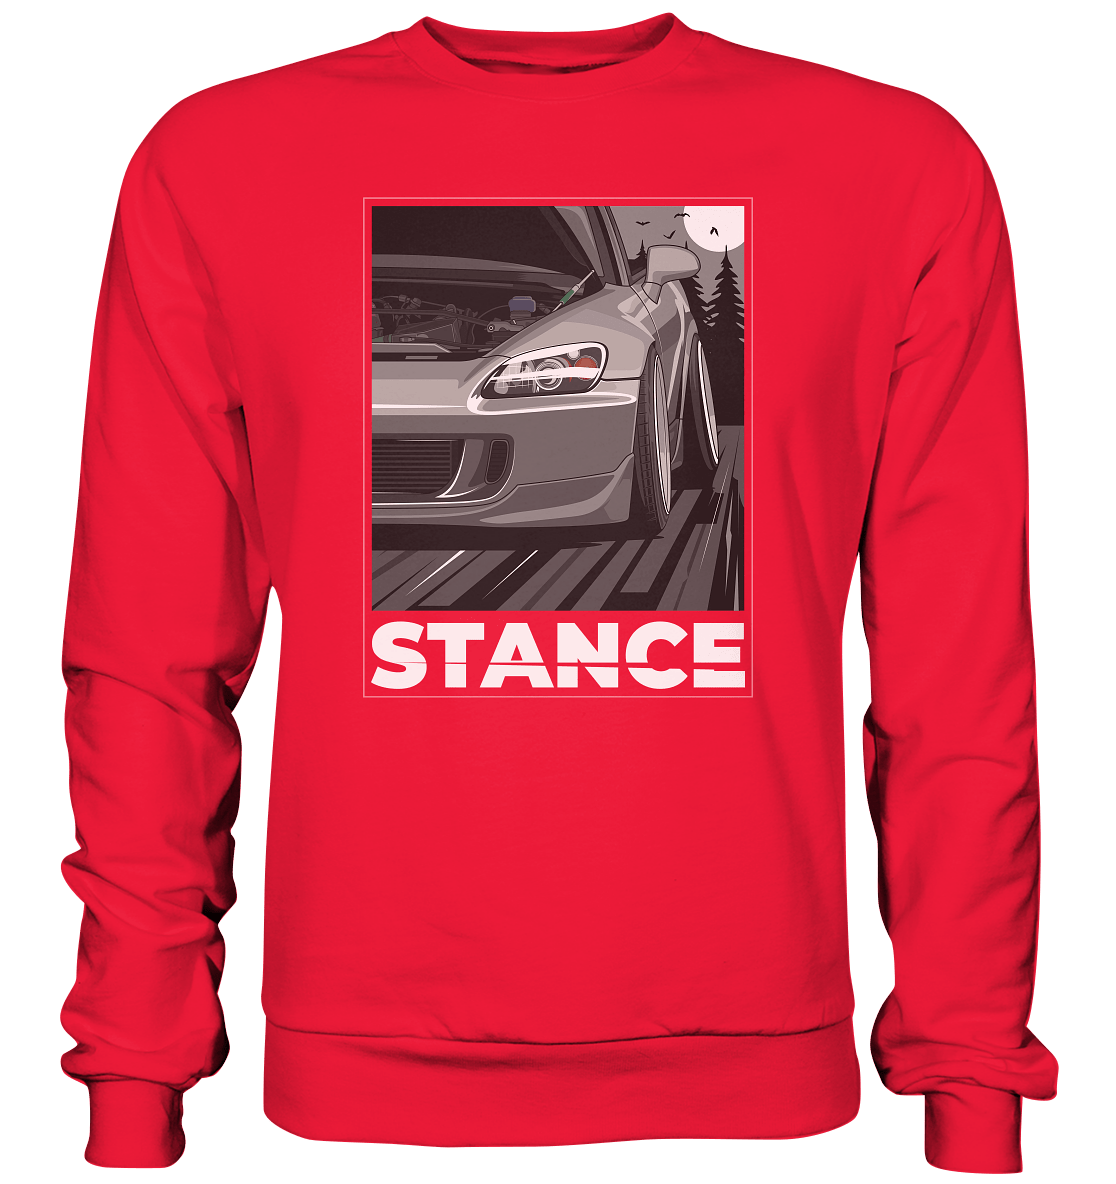 S2000 Stance - Premium Sweatshirt - MotoMerch.de